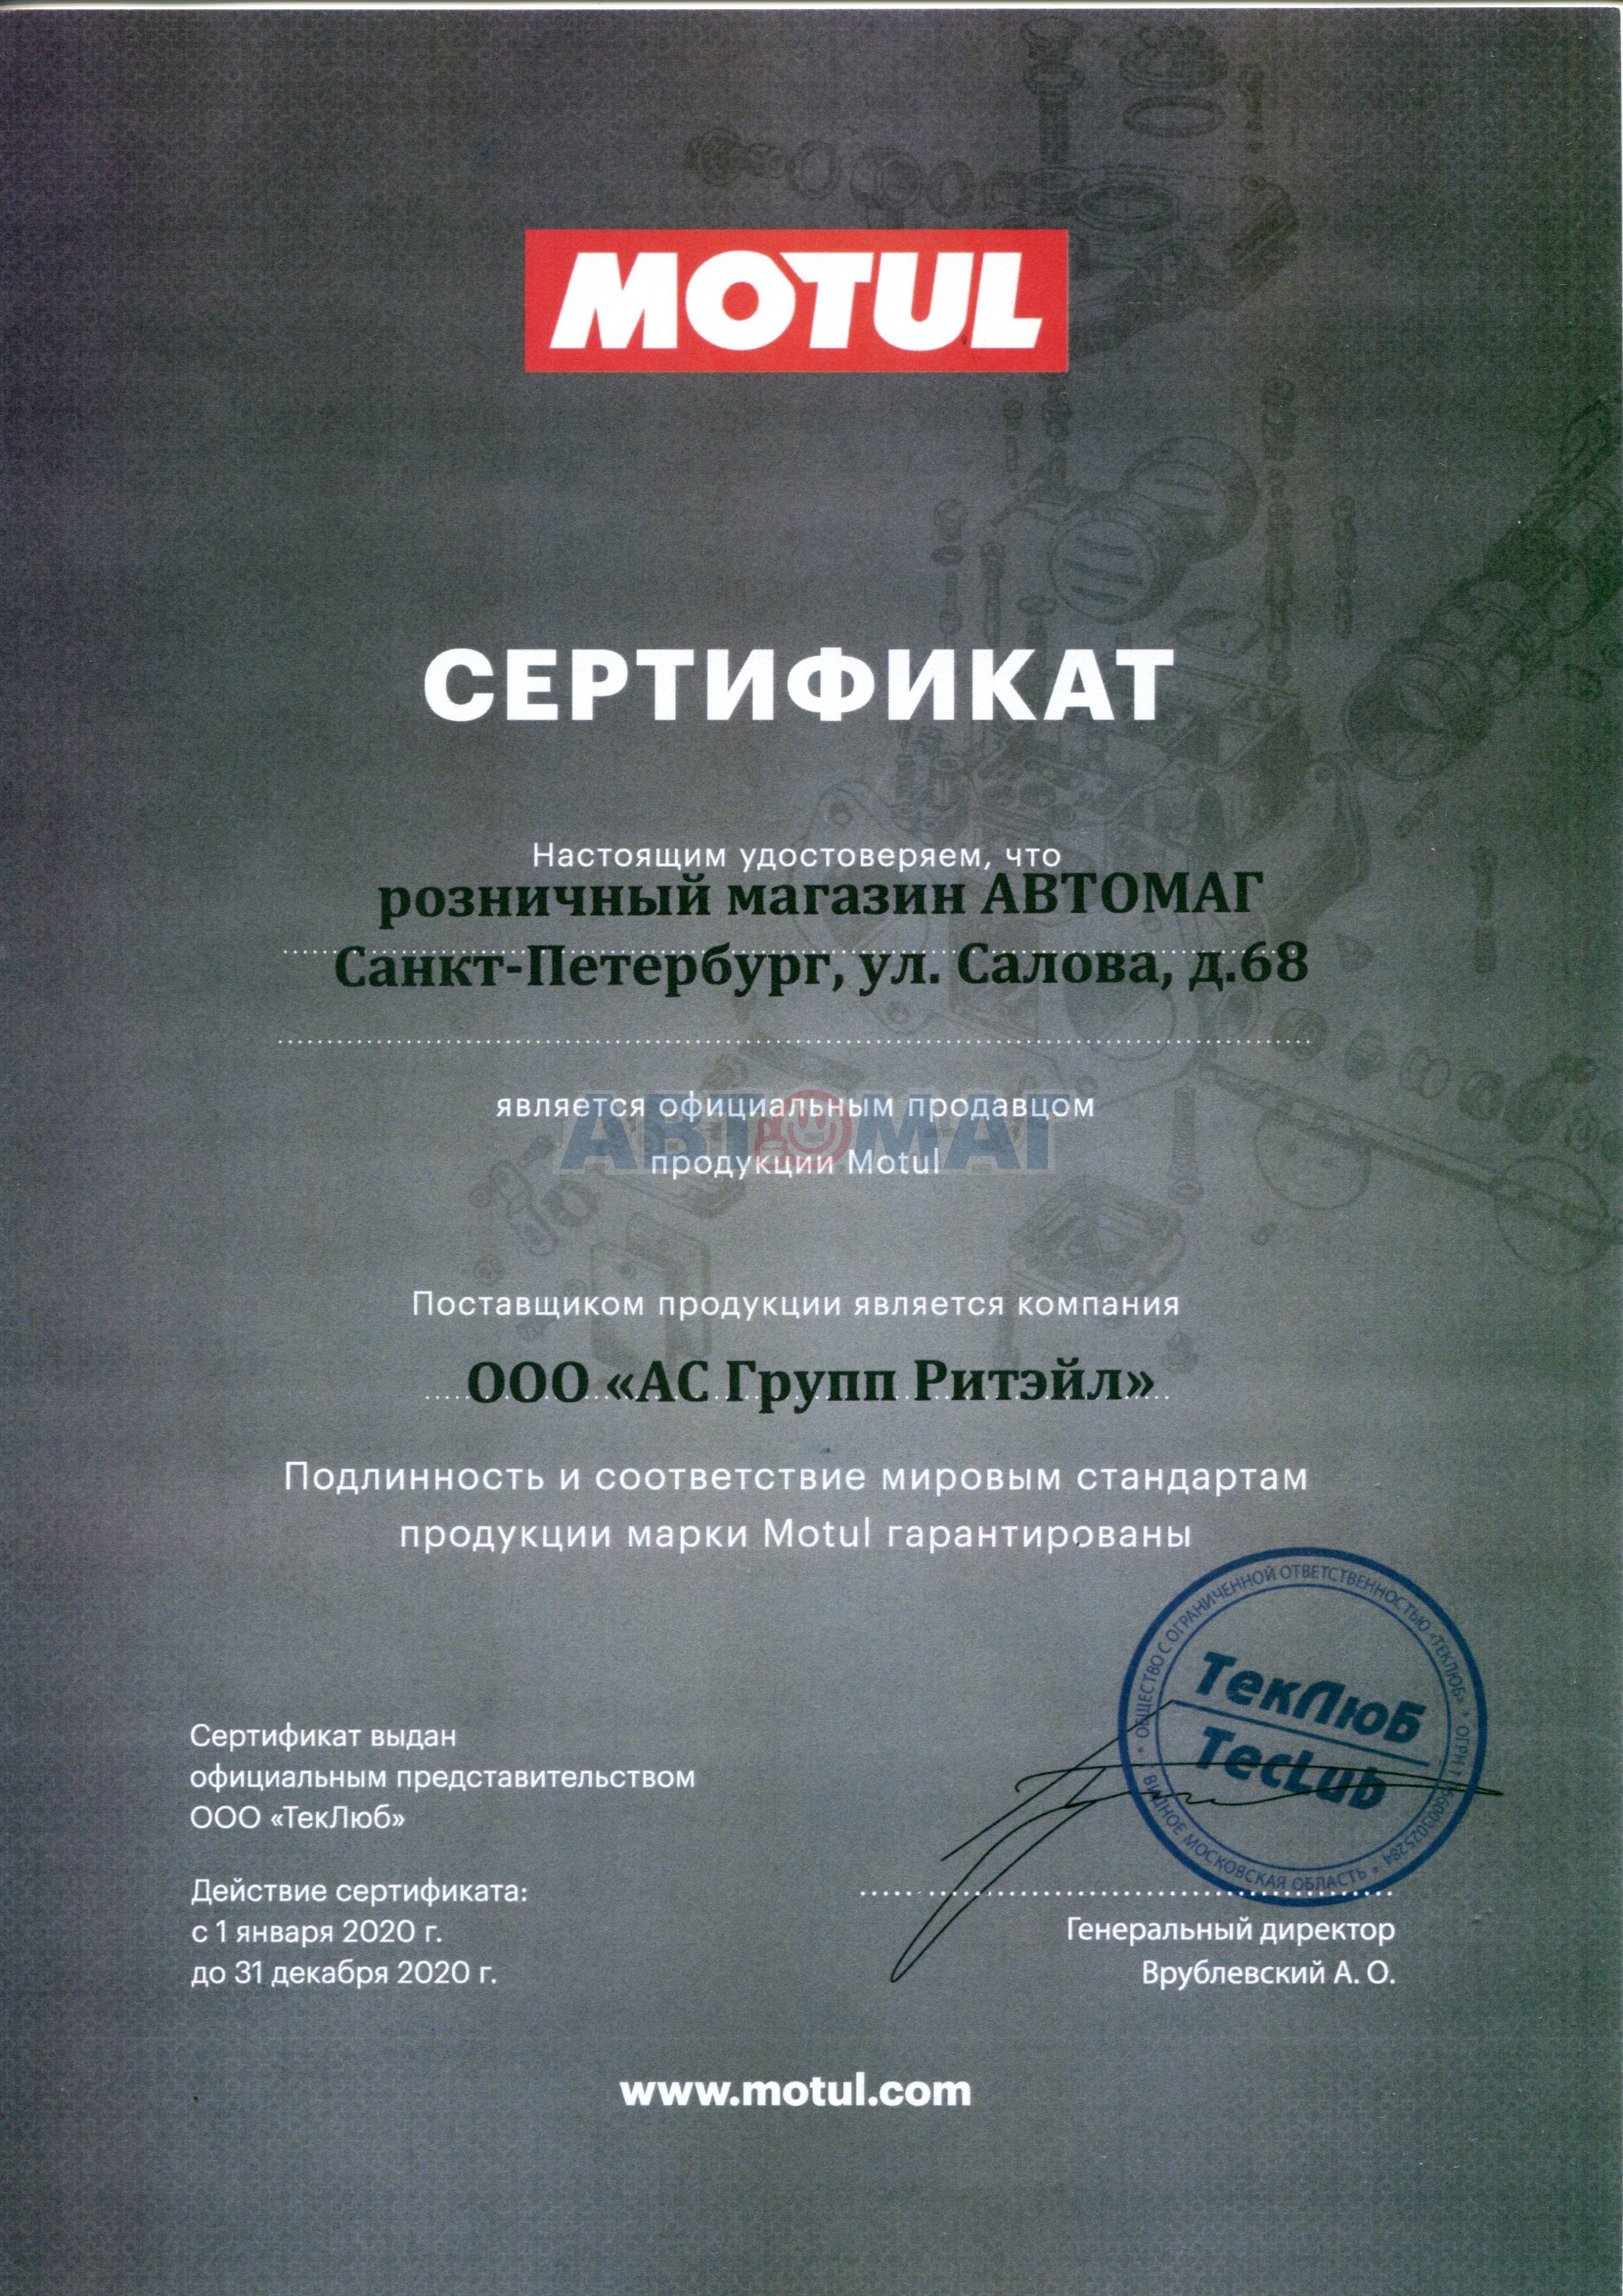 Сертификат MOTUL_М01 офиц.продавец до 31.12.2020